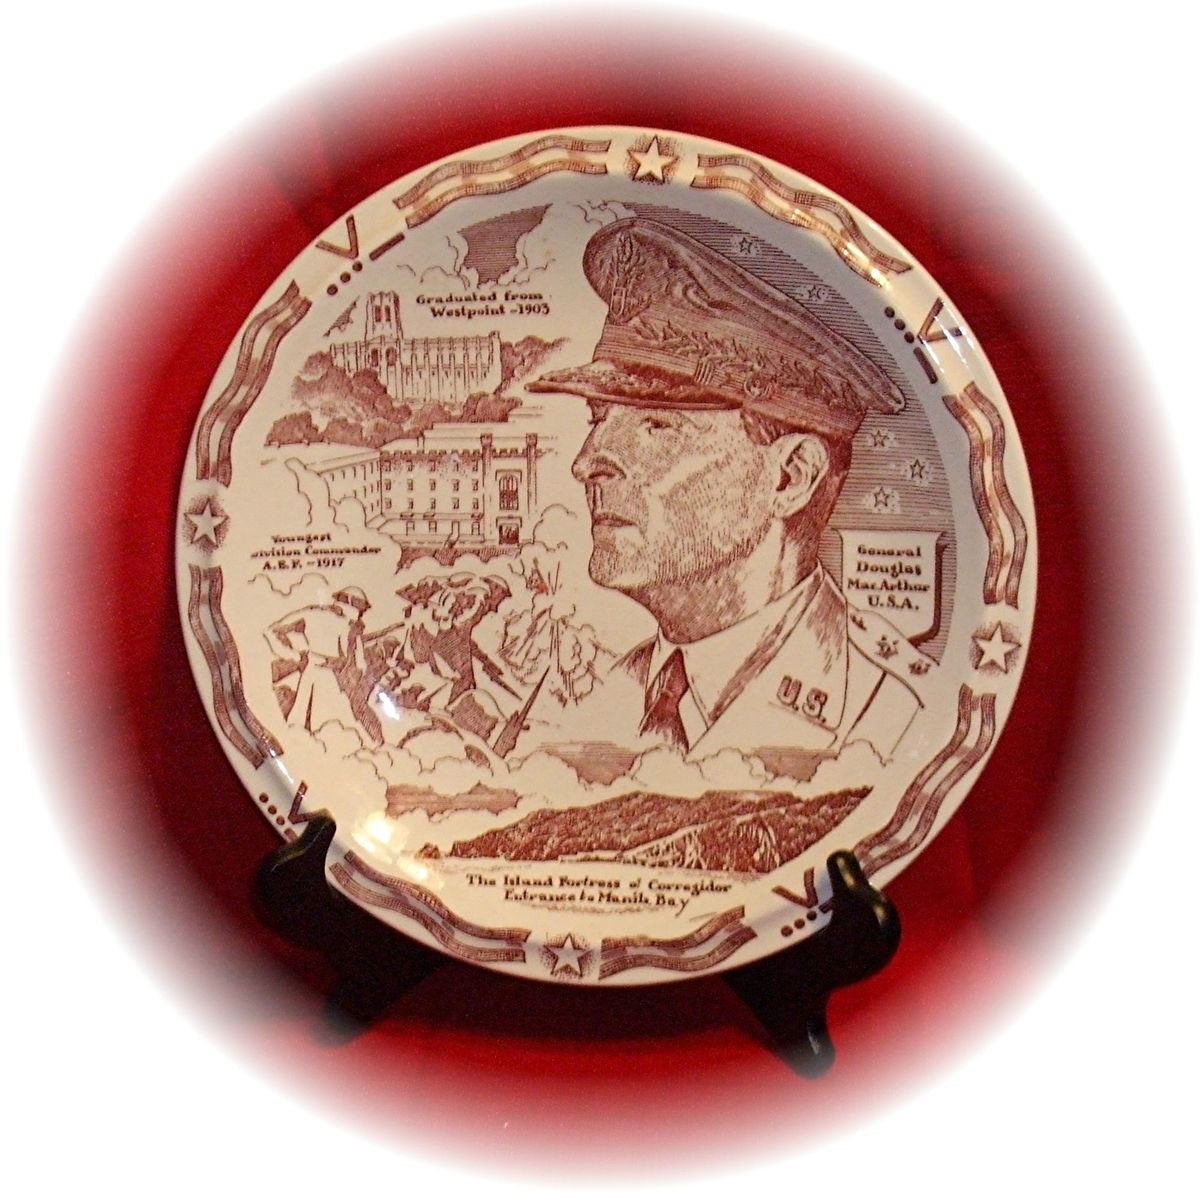 10 5 Plate Honoring General Douglas MacArthur Vernon Kilns Circa 1942